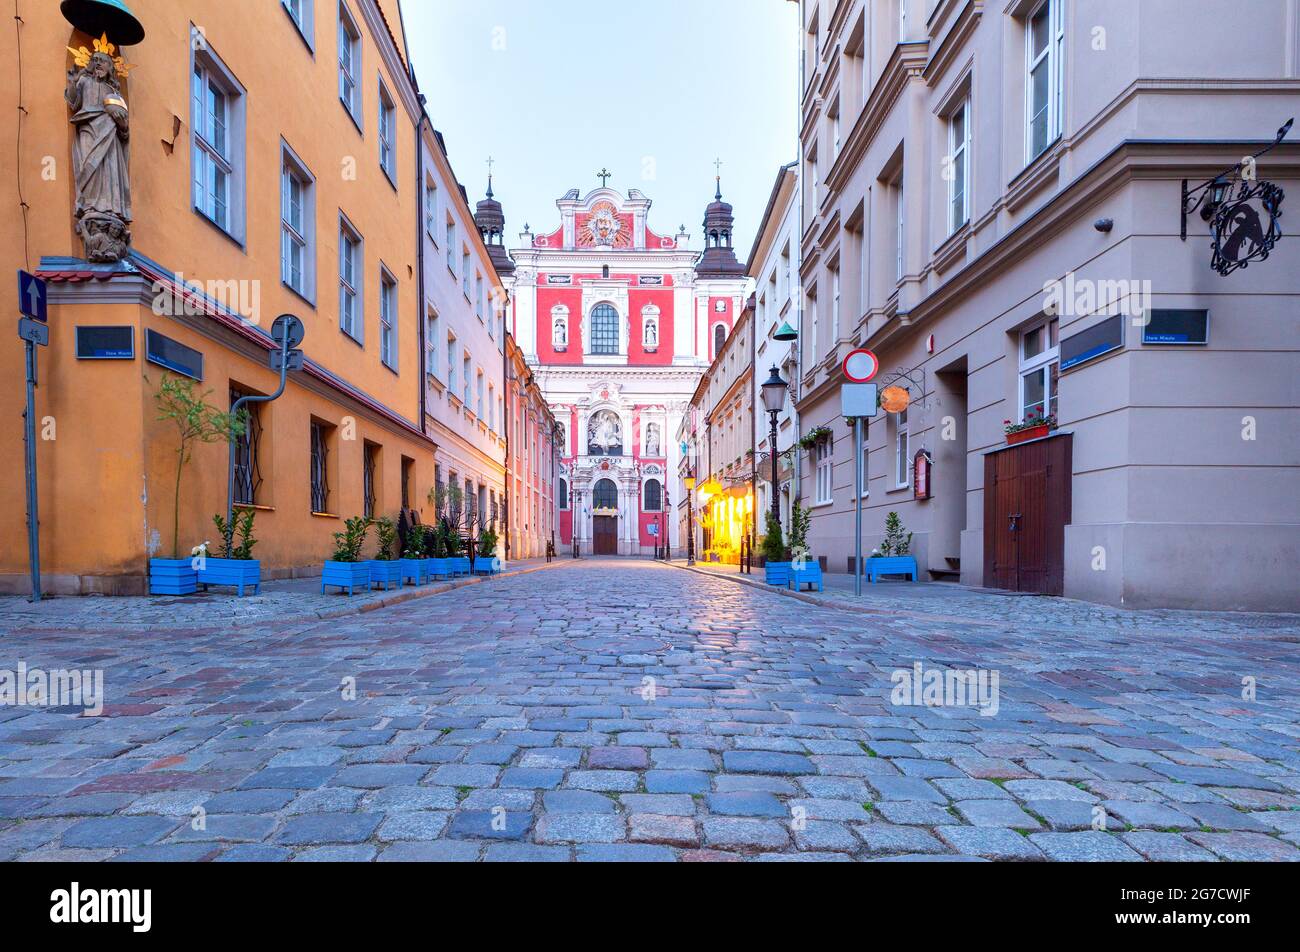 Facciate colorate di case medievali nella parte storica della città. Poznan Polonia. Foto Stock